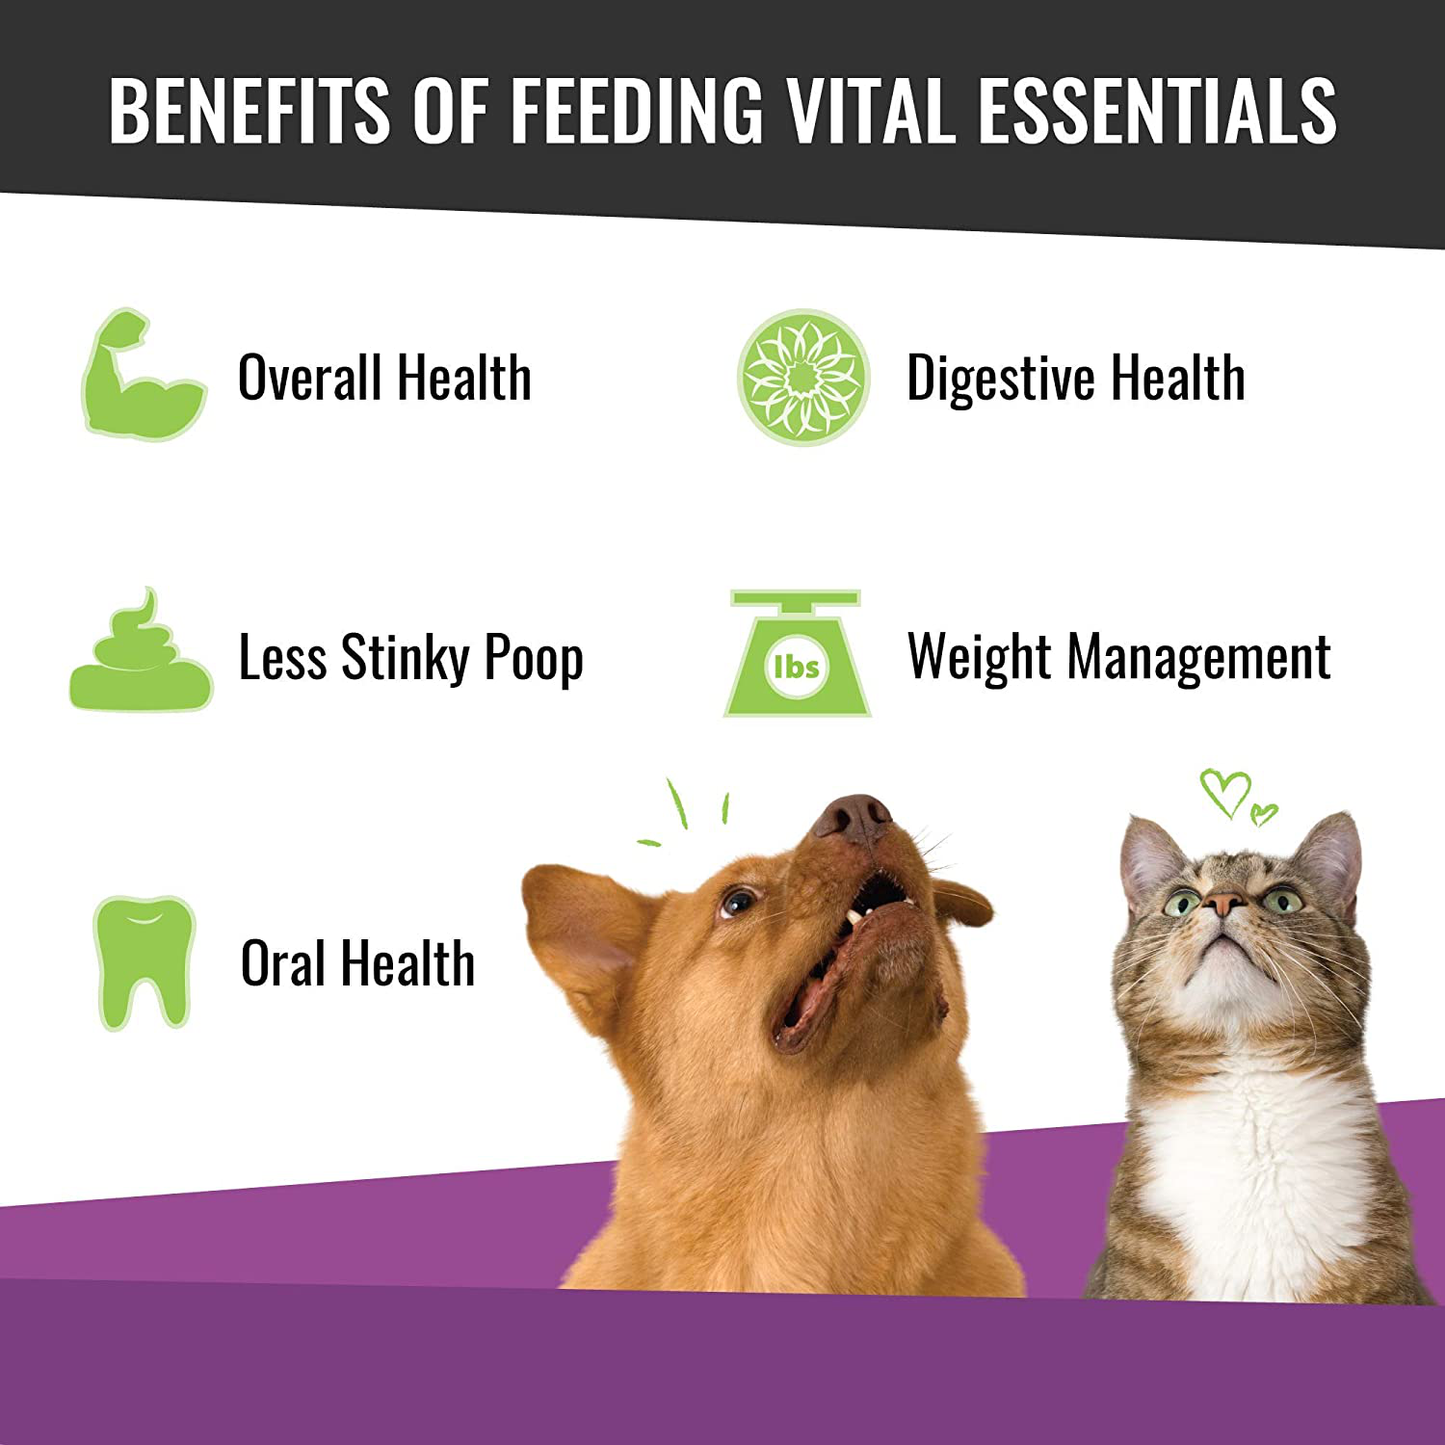 Vital Essentials Vital Cat Freeze-Dried Cat Treats - All Natural - Resealable Bag Animals & Pet Supplies > Pet Supplies > Cat Supplies > Cat Treats Vital Essentials   